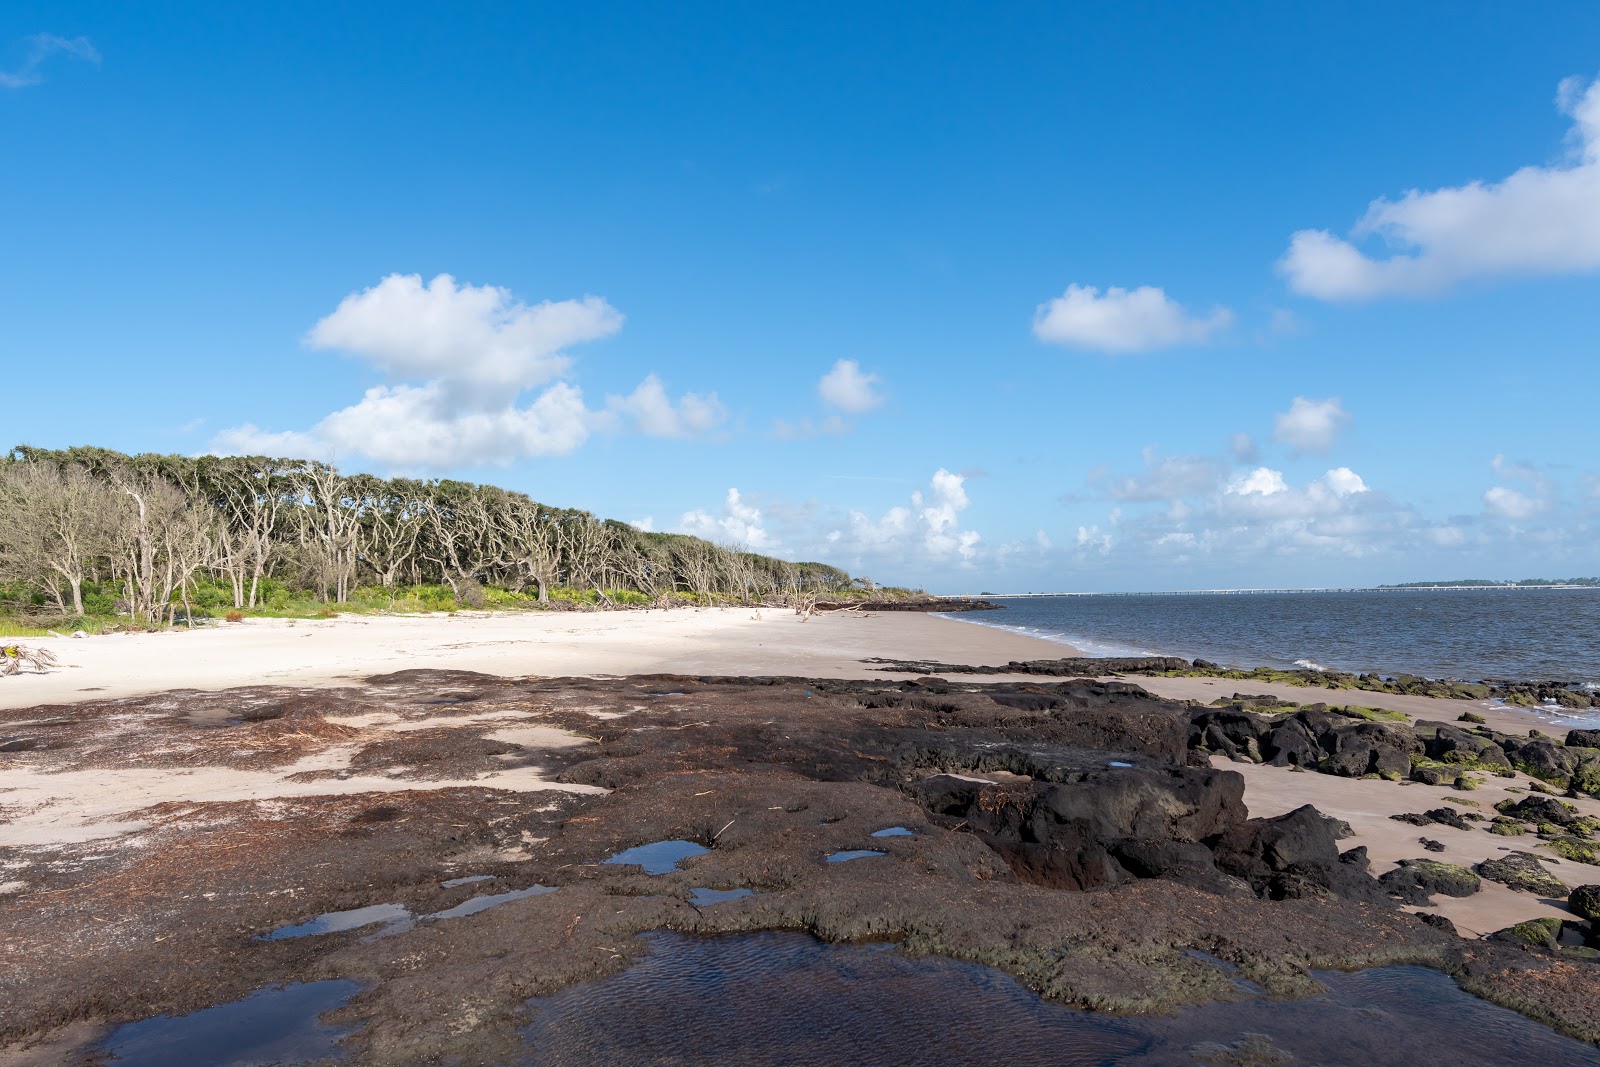 Foto af Boneyard beach - populært sted blandt afslapningskendere